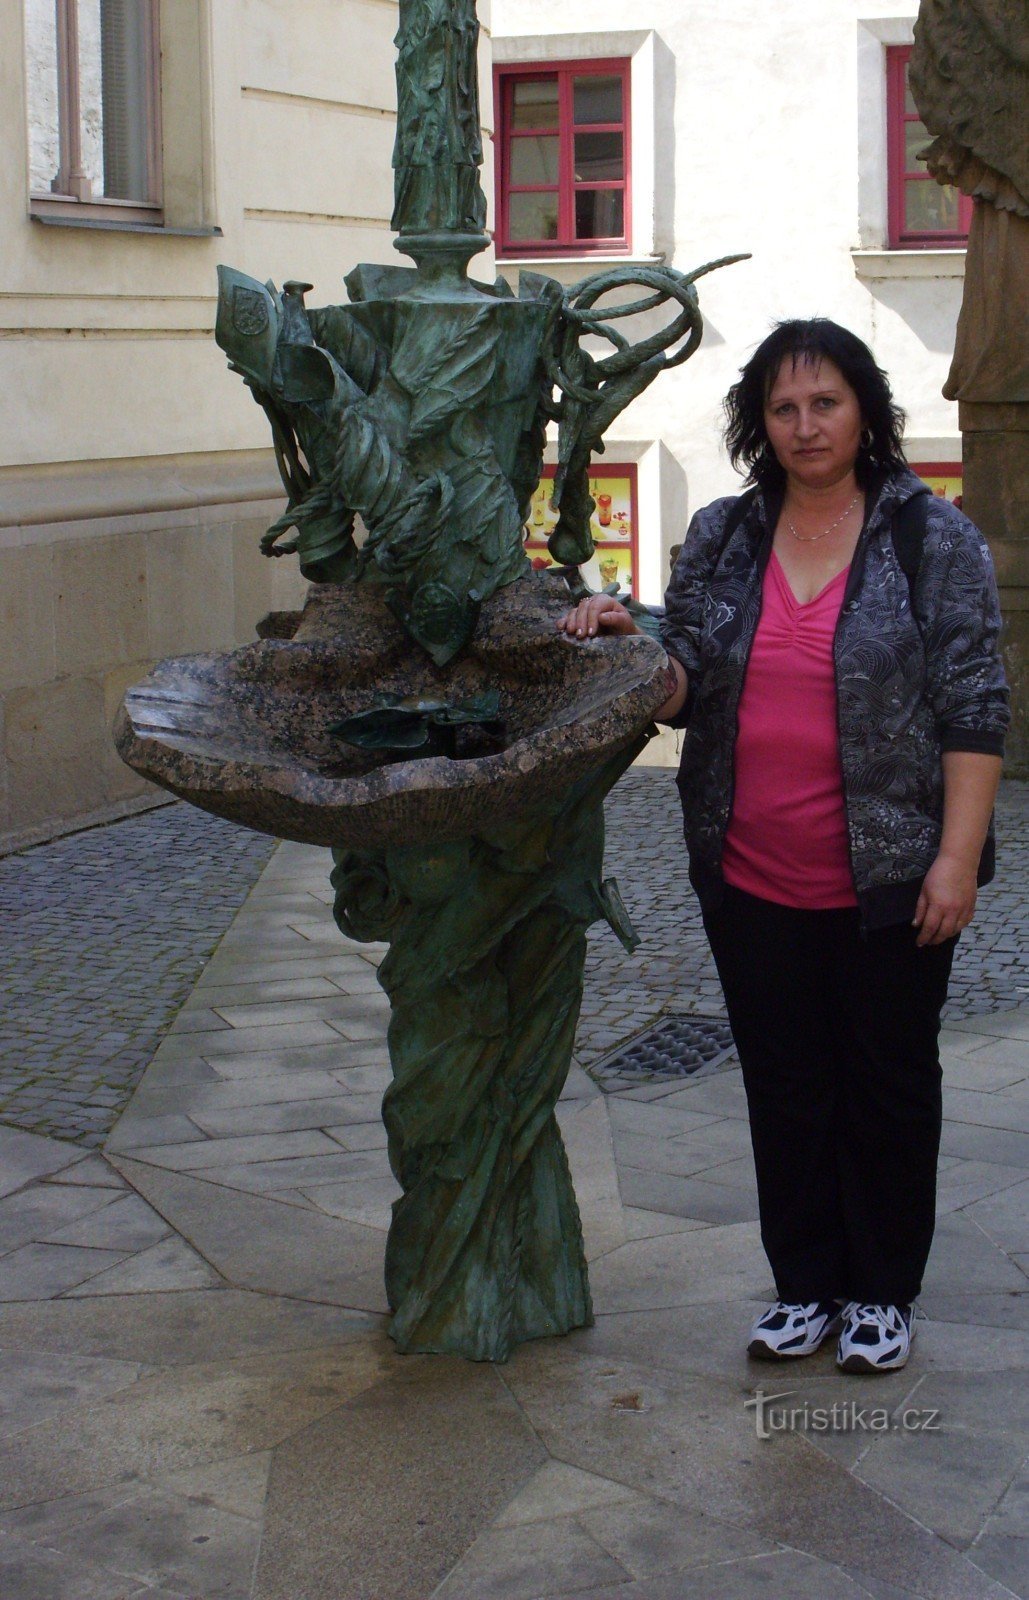 21st century fountain in Olomouc